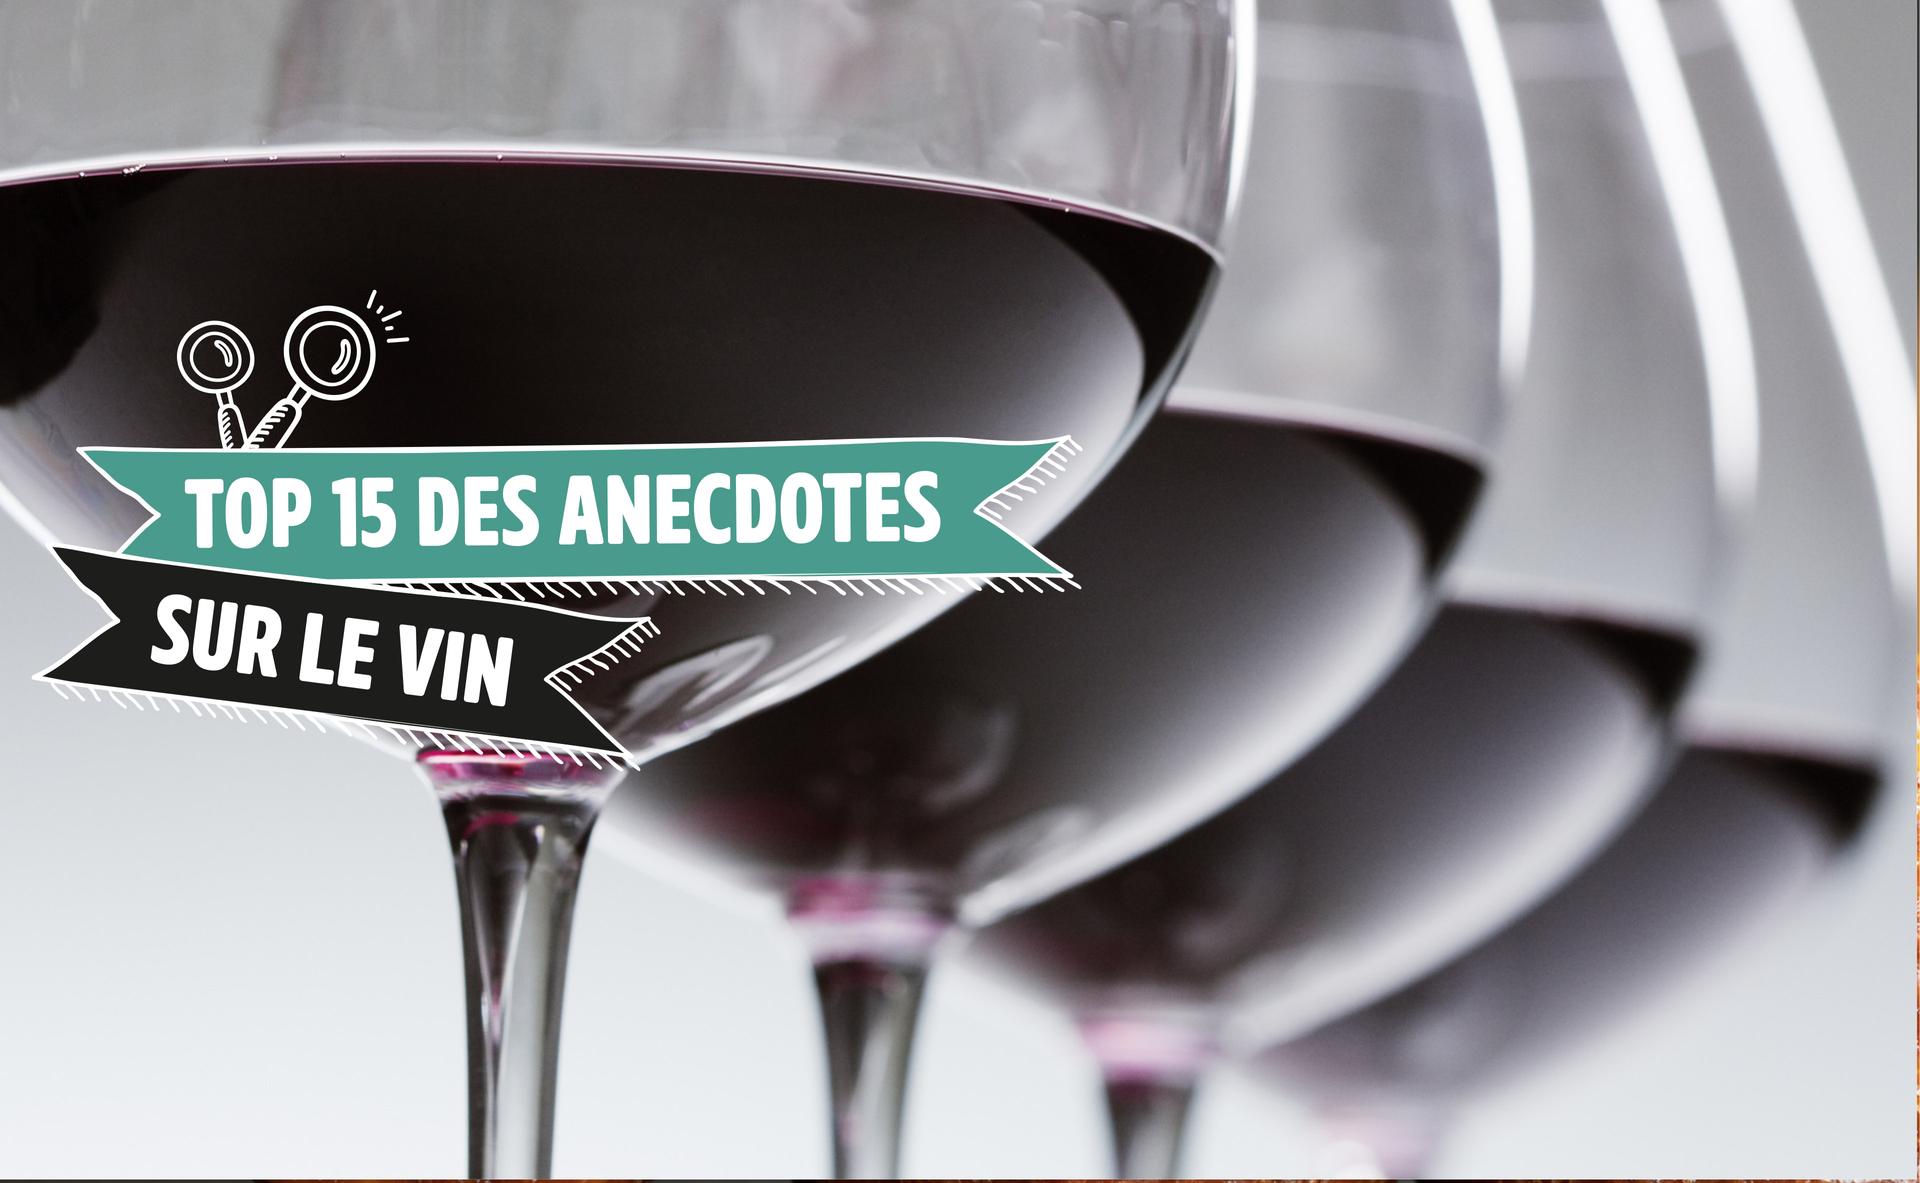 Top 15 d'anecdotes sur le vin